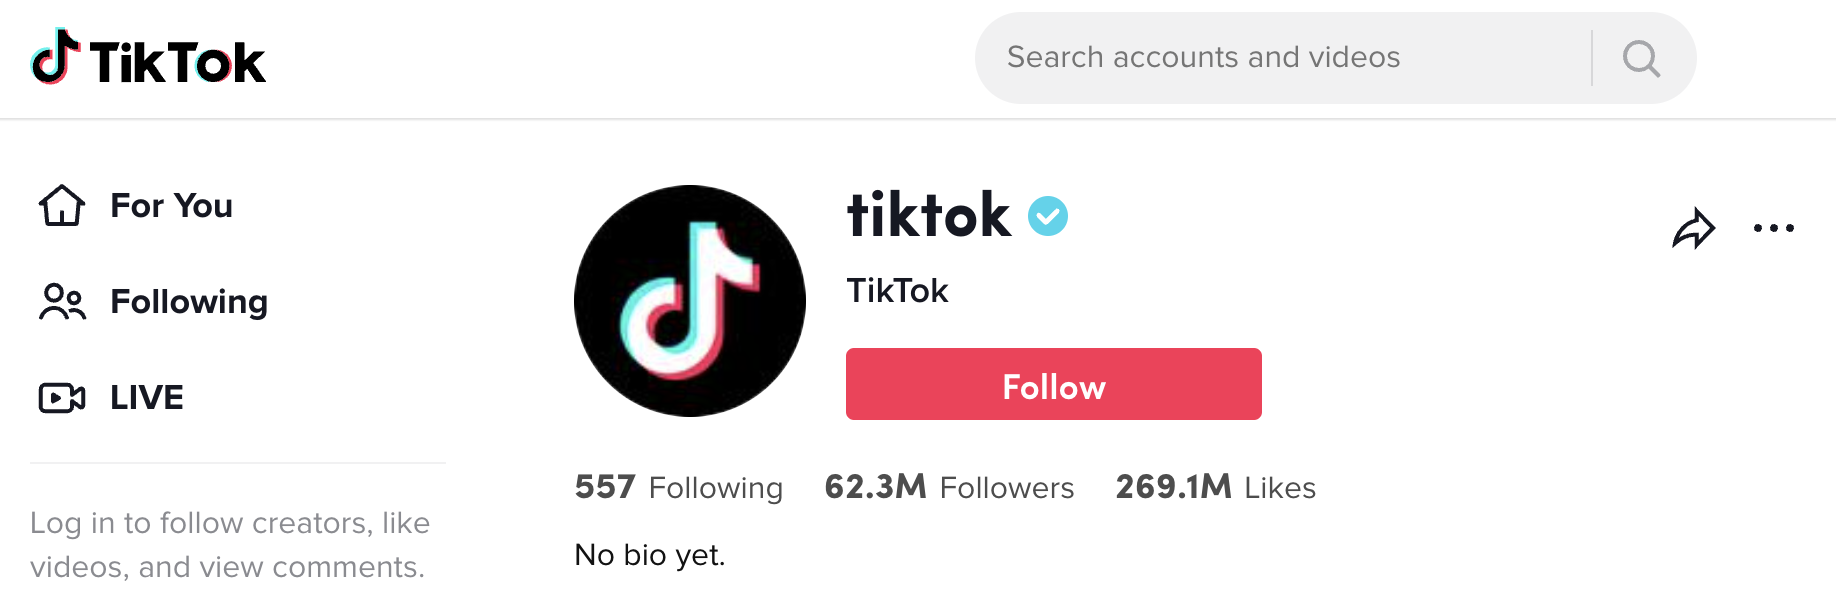 TikTok Official Account